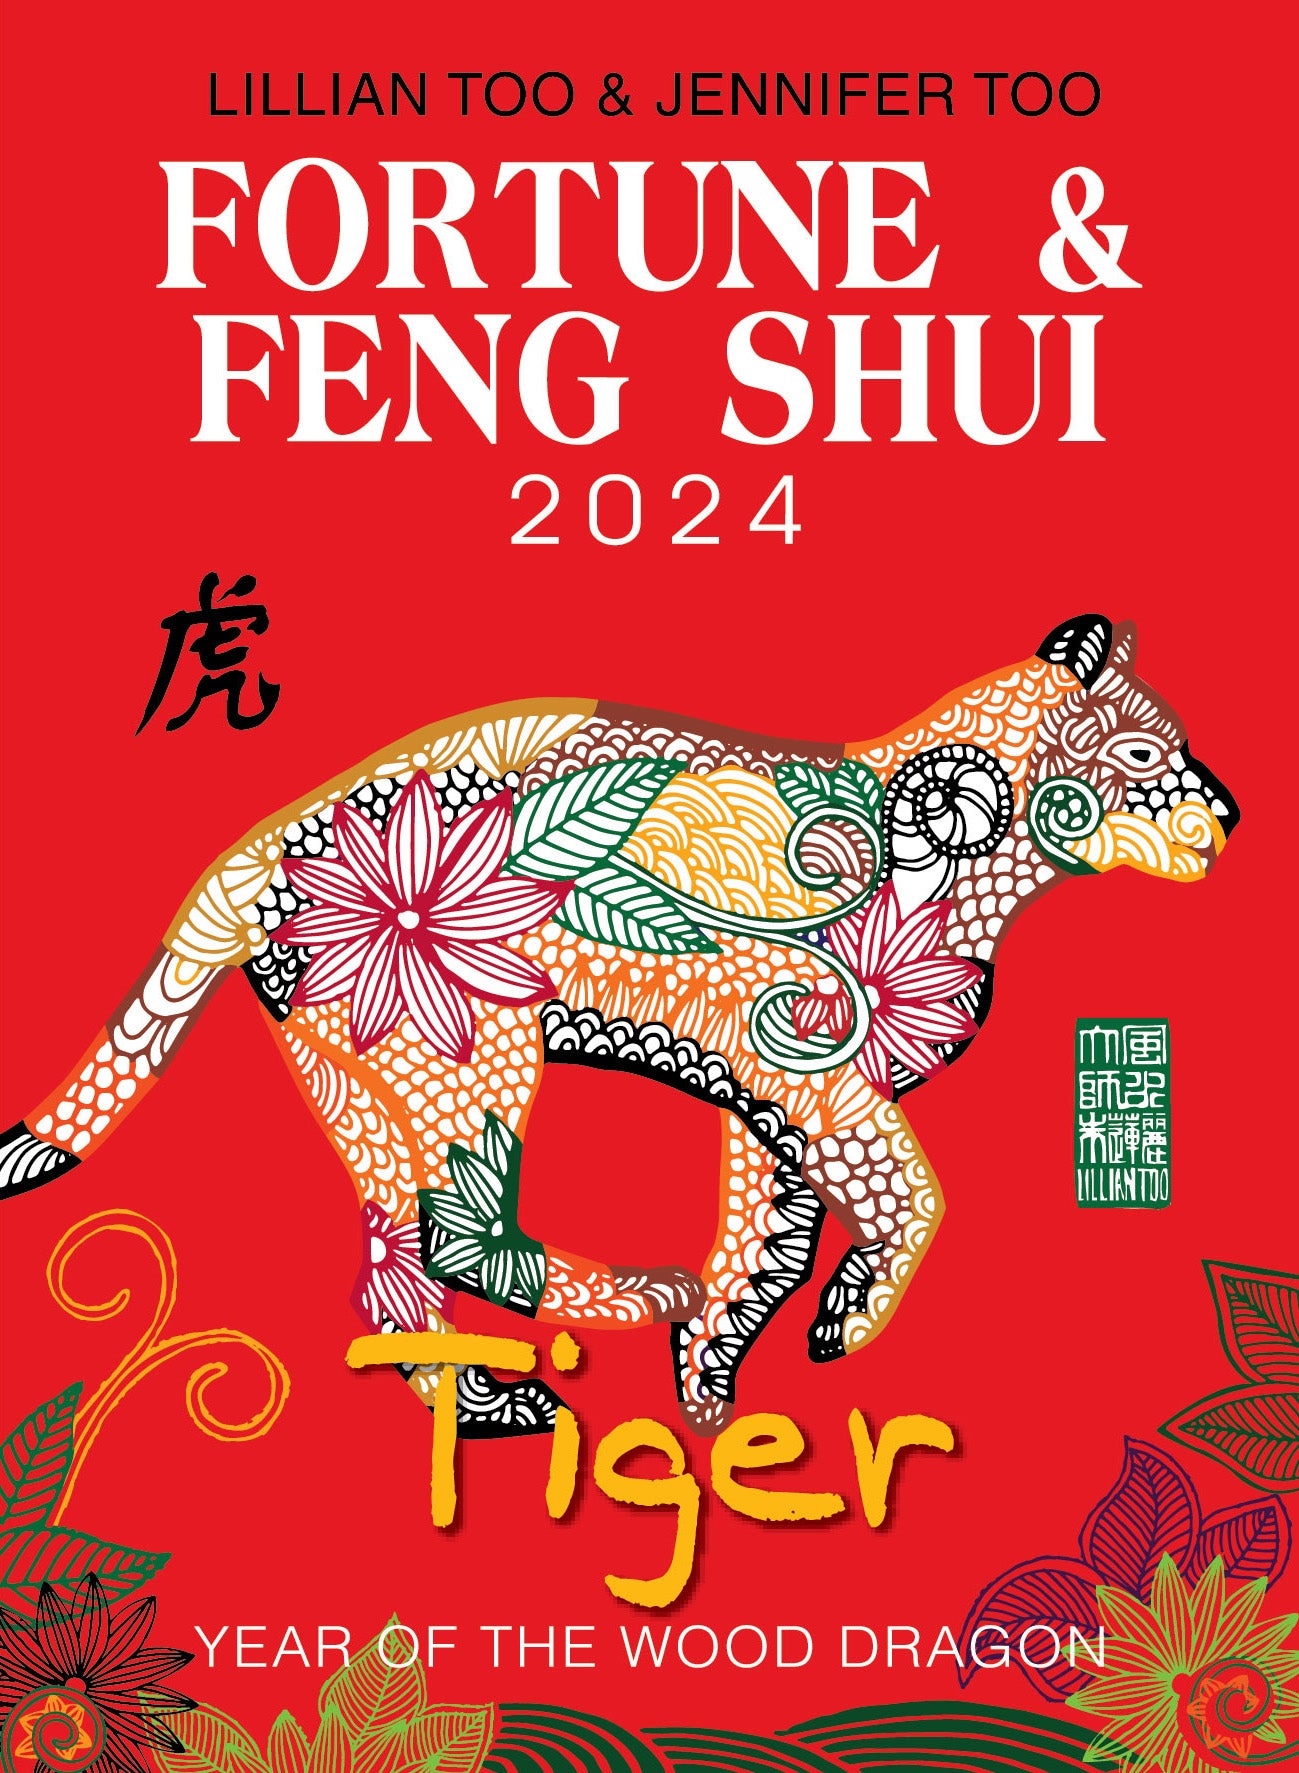 3 BOOKS COMBO - TIGER - Lillian Too & Jennifer Too Fortune & Feng Shui, Feng Shui Diary, Feng Shui Almanac 2024 - 6731